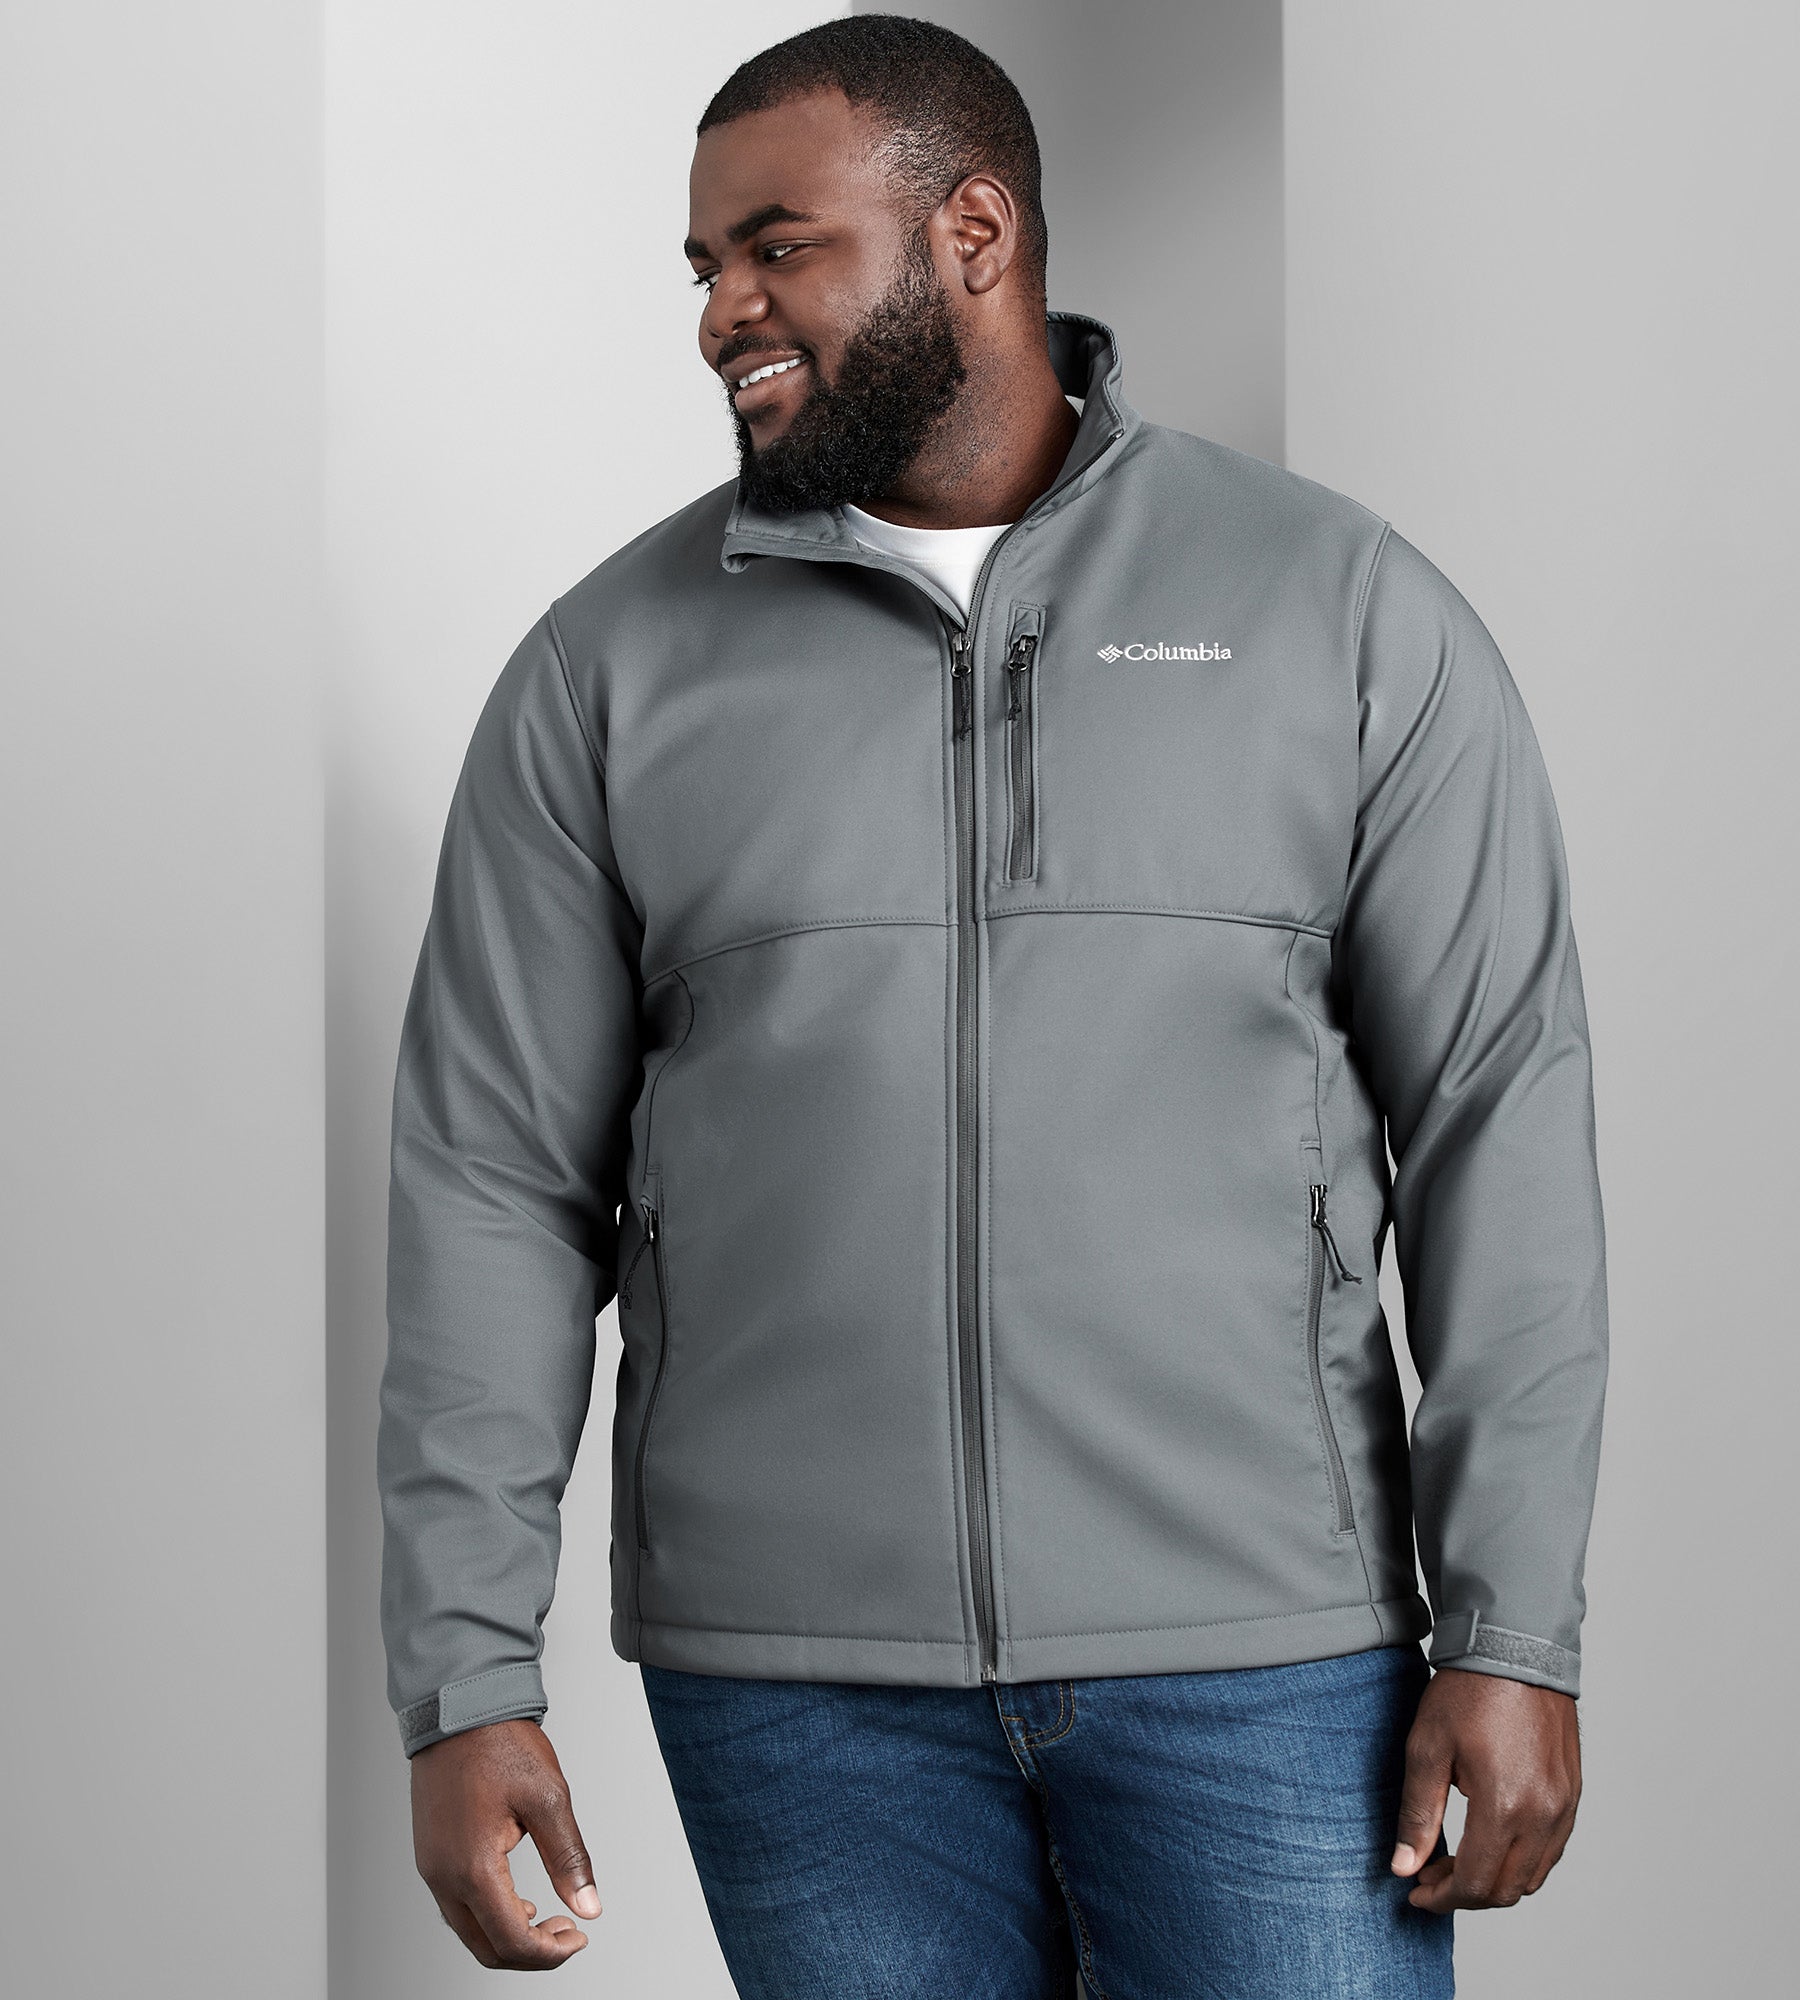 Ascender Softshell Jacket – Mr. Big & Tall